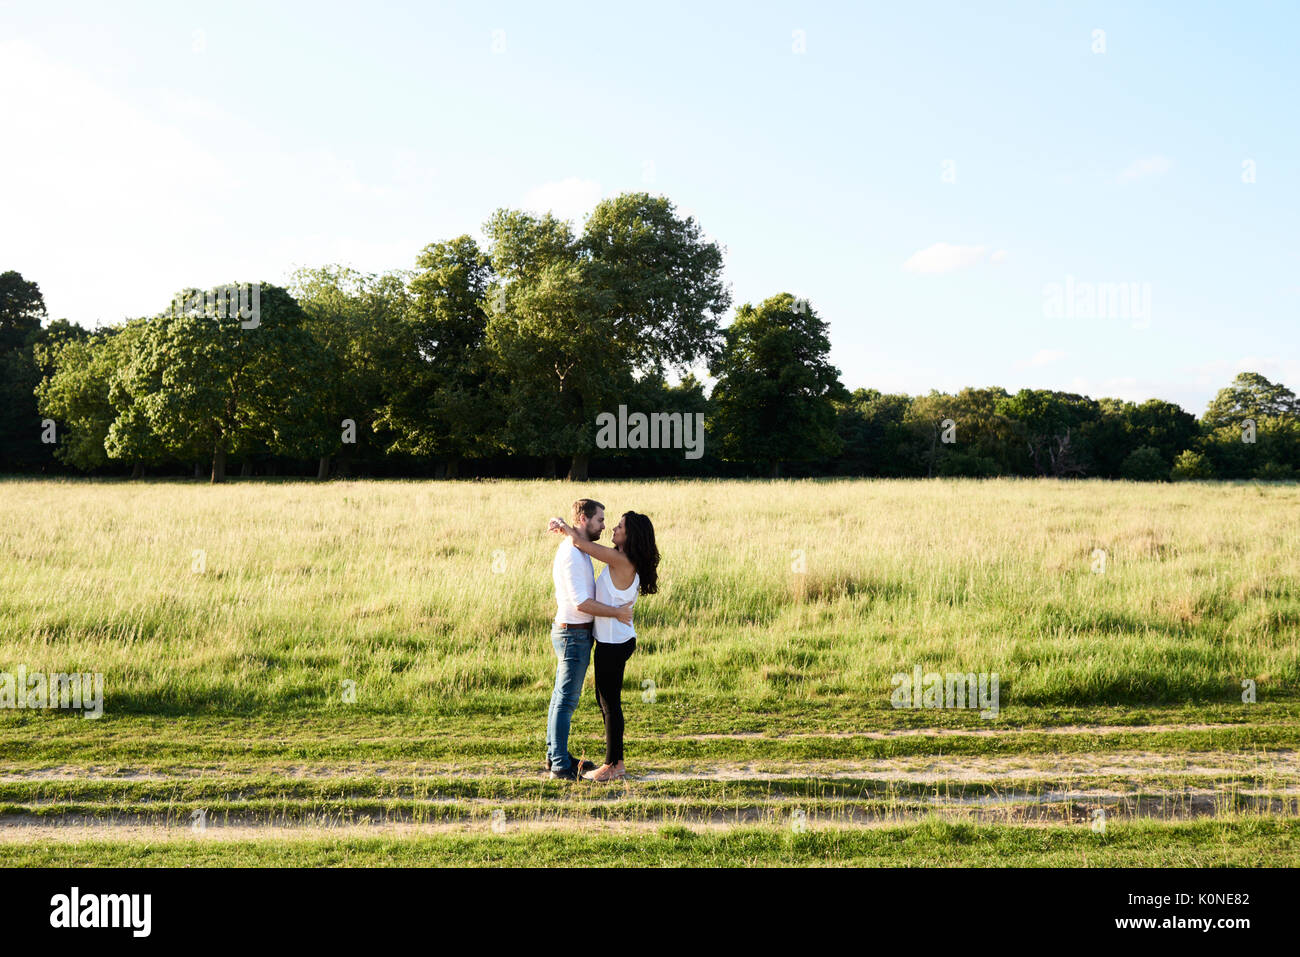 Hampstead Heath, Londres, Reino Unido, precioso momento pareja abrazada al aire libre, parque del sol en pareja Foto de stock